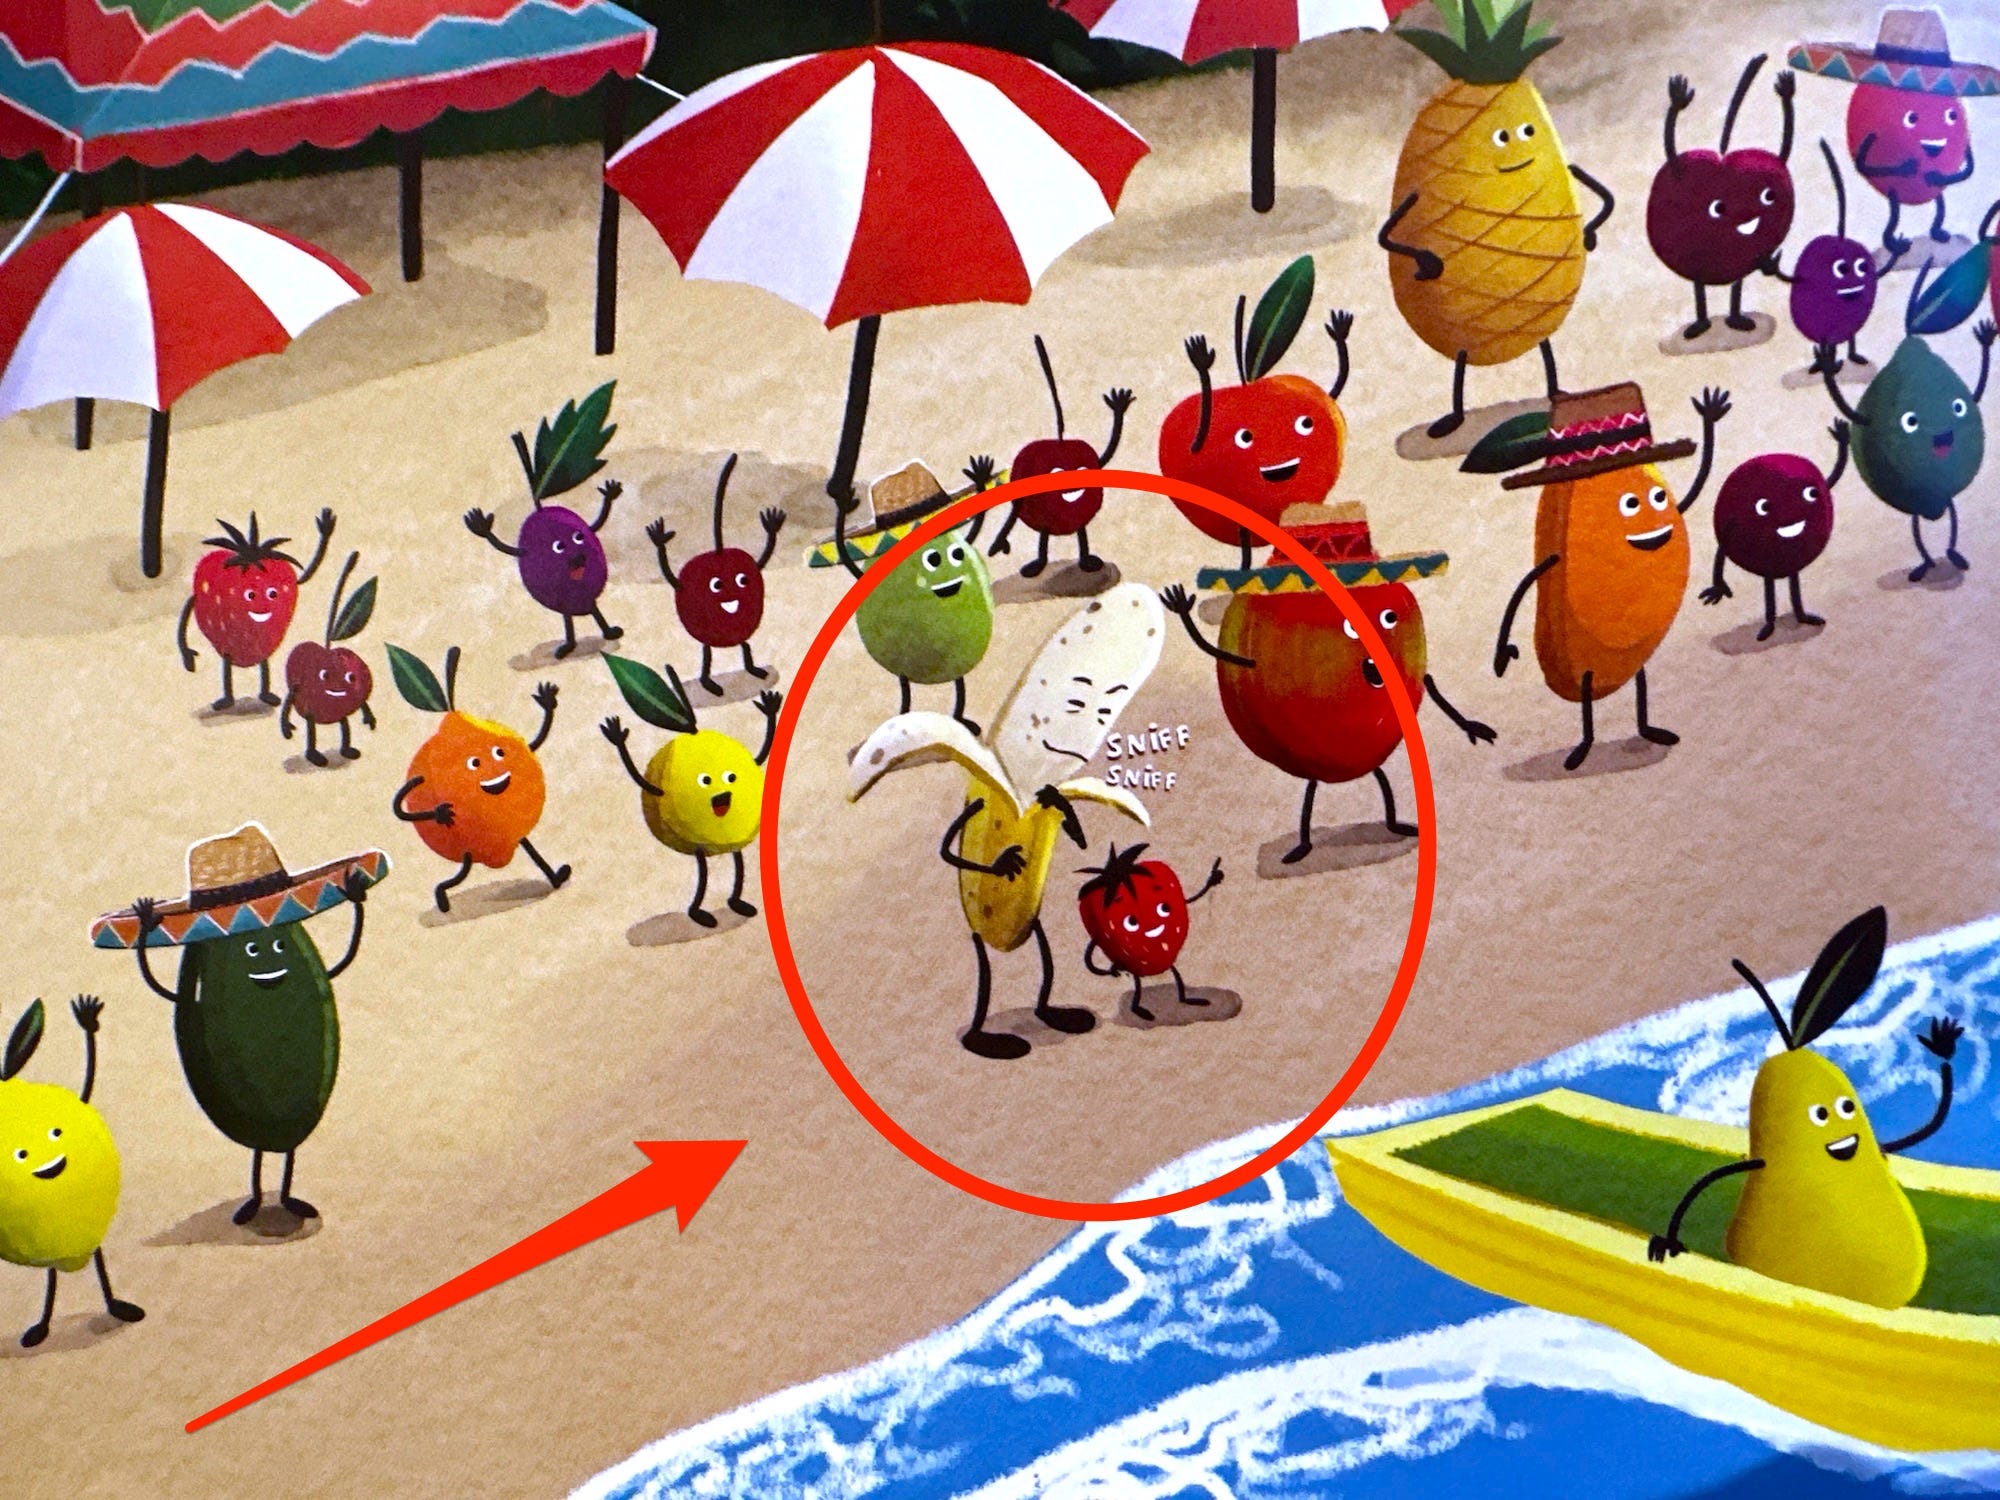 Señor Banana, die Figur basierend auf Joe Biden, schnüffelt von hinten an einer weiteren Frucht.